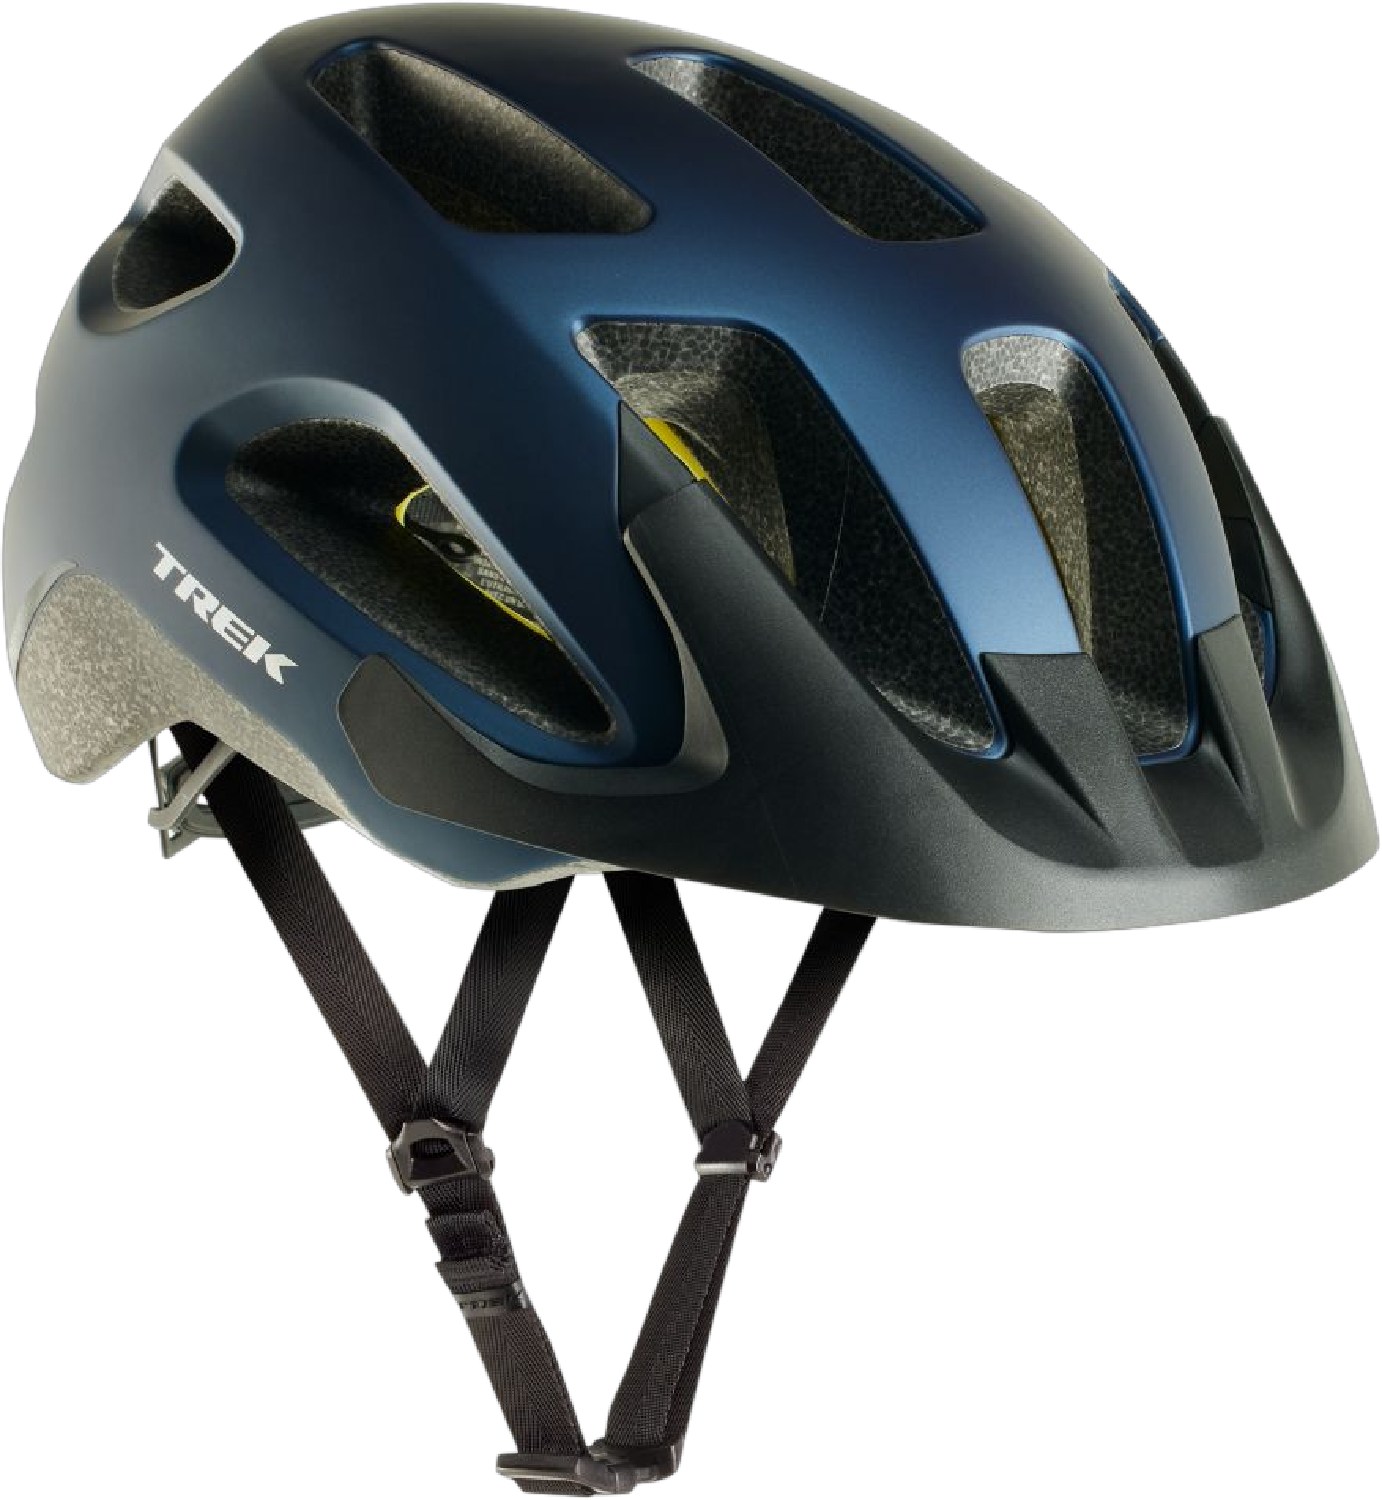 Велосипедный шлем Solstice Mips Trek, синий 1 шт велосипедный переключатель передач для trek 297656 322175 trek skye series elite 9 9 rocx spr livestrong fx trek 8500 mech dropout